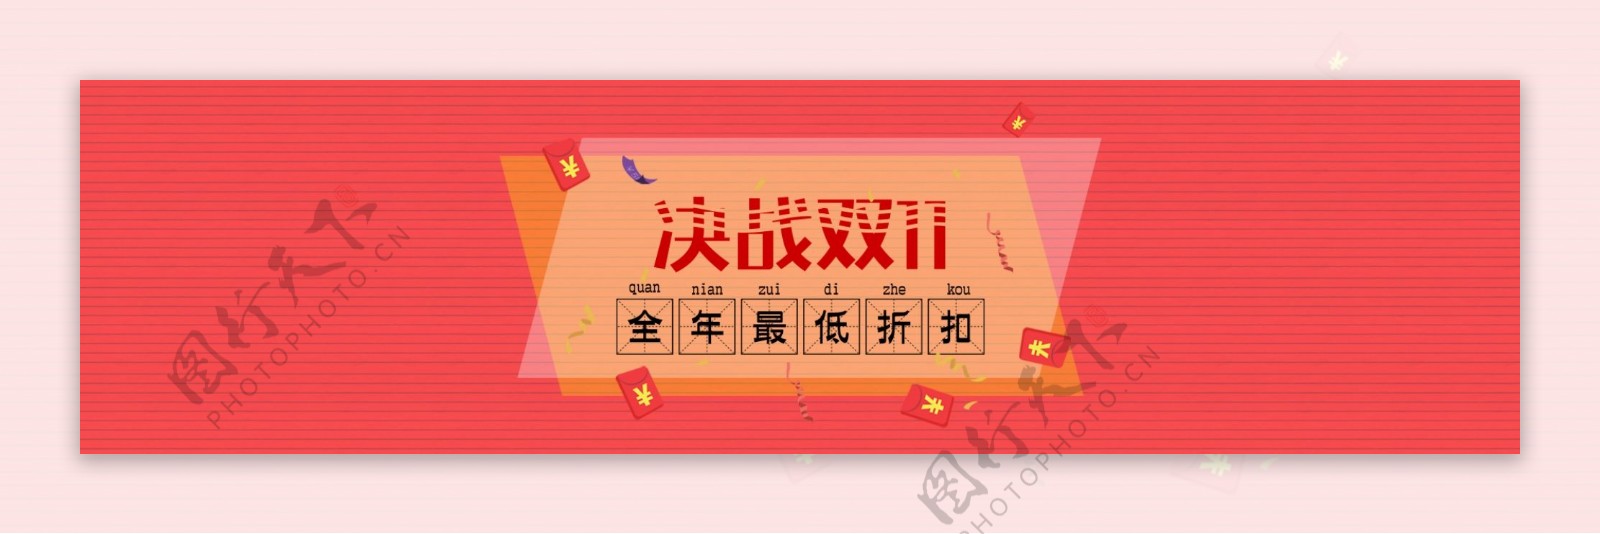 淘宝双11广告促销banner